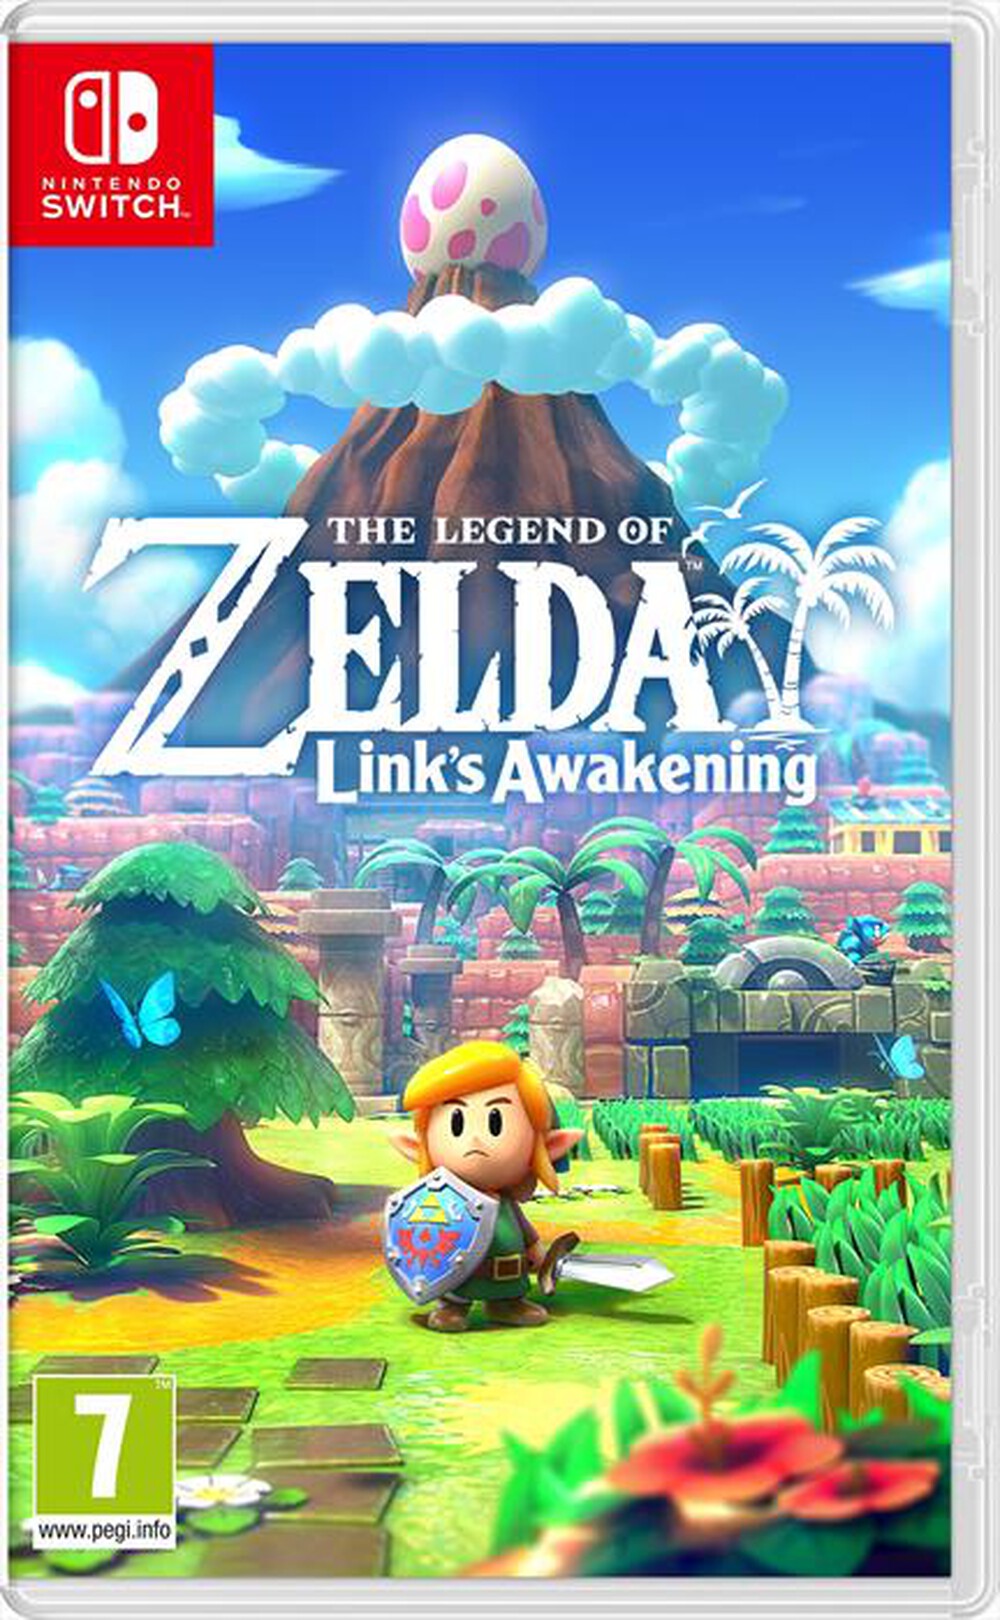 "NINTENDO - The Legend of Zelda: Link's Awakening"